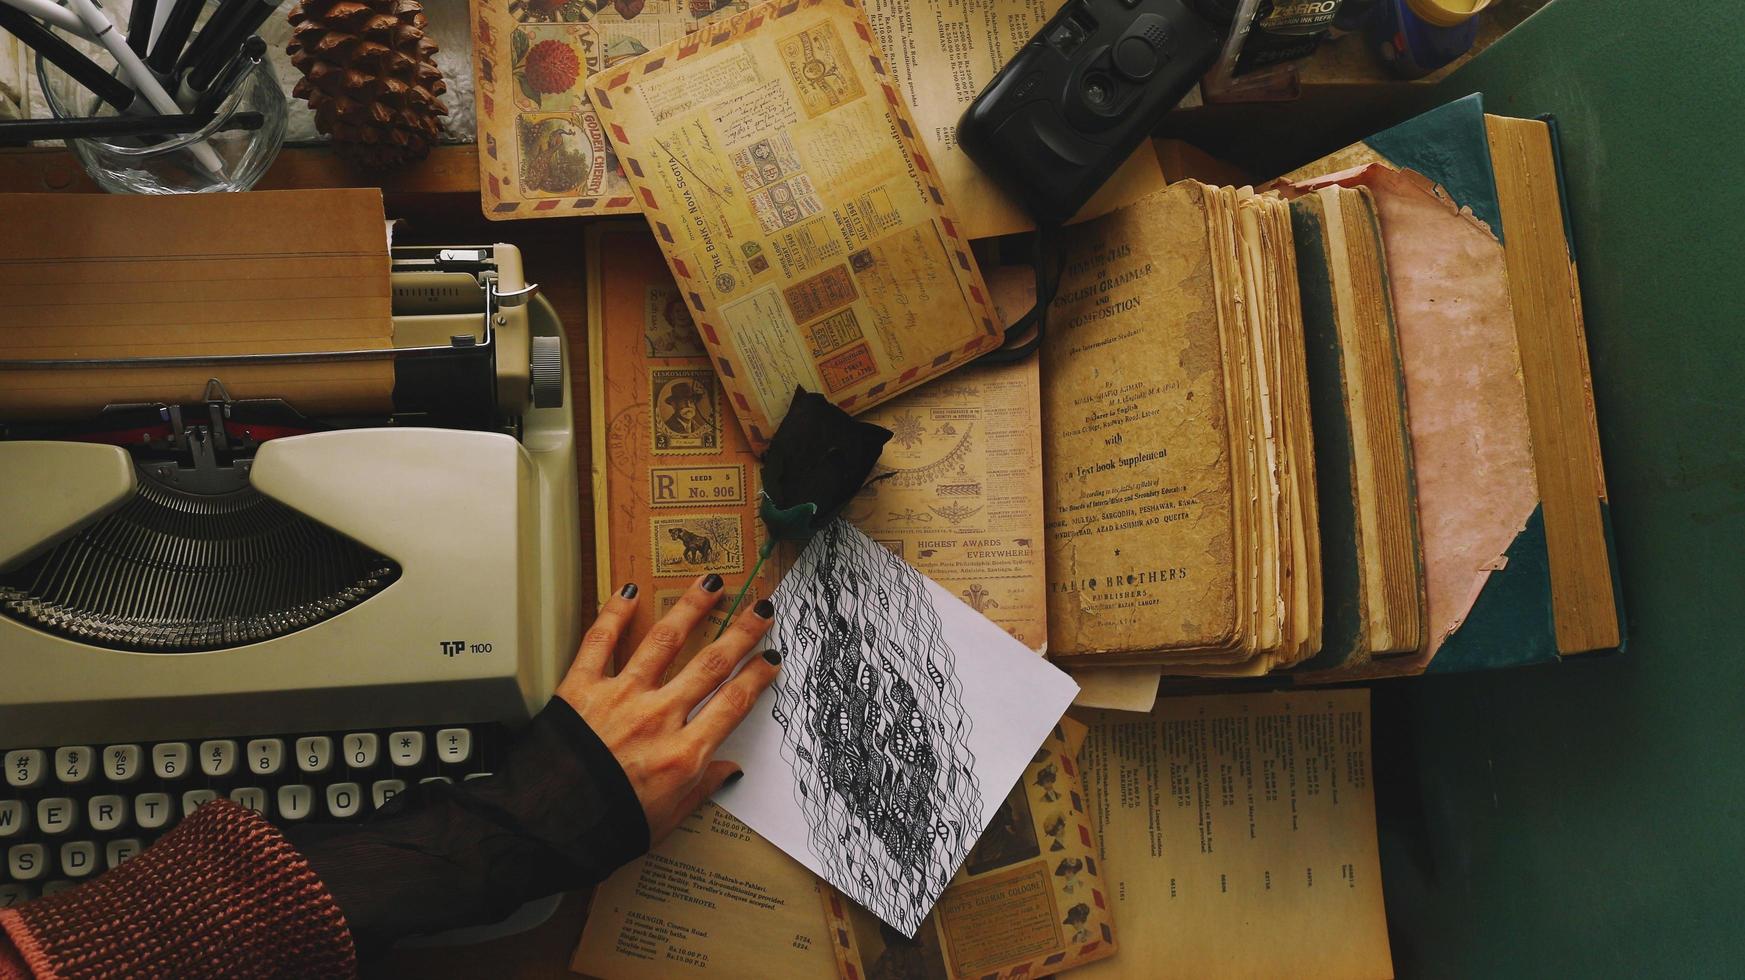 Vintage ▾ scrivania superiore ambientazione con vecchio libri e macchina da scrivere foto